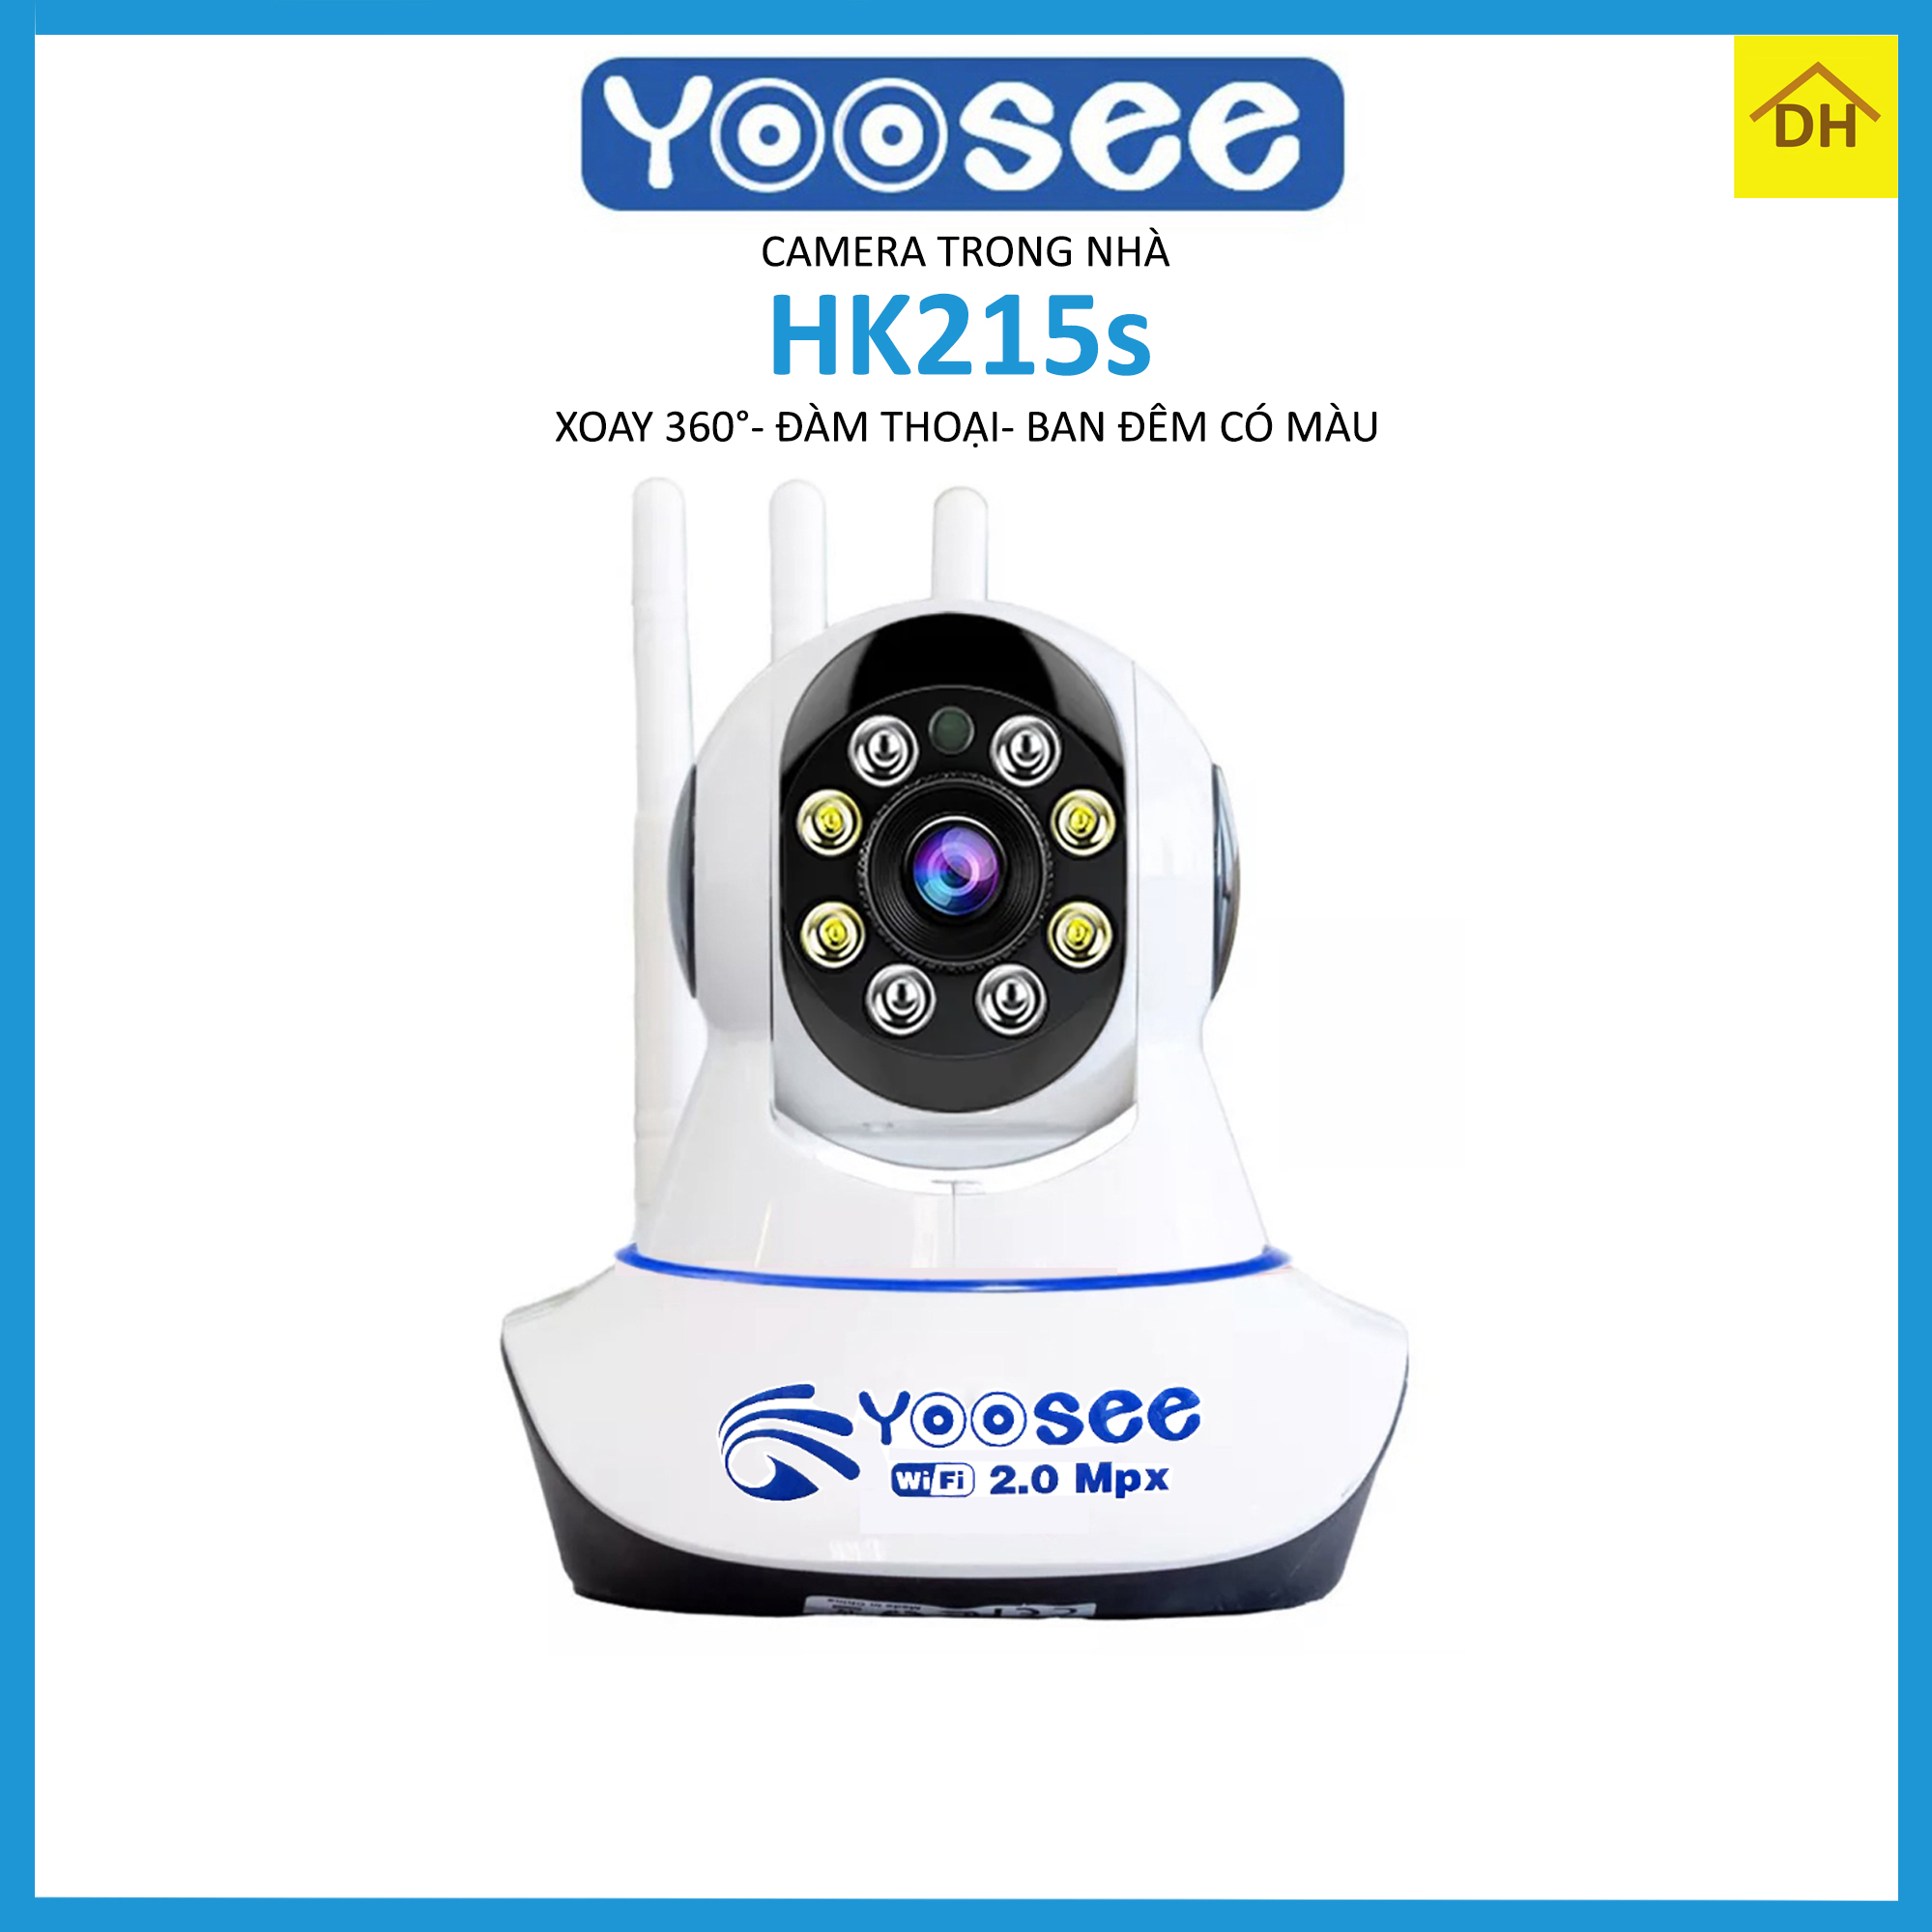 Camera YooSee 3 AnTen Full HD 2.0Mpx 1080p Xoay 360 độ- BAN ĐÊM CÓ MÀU